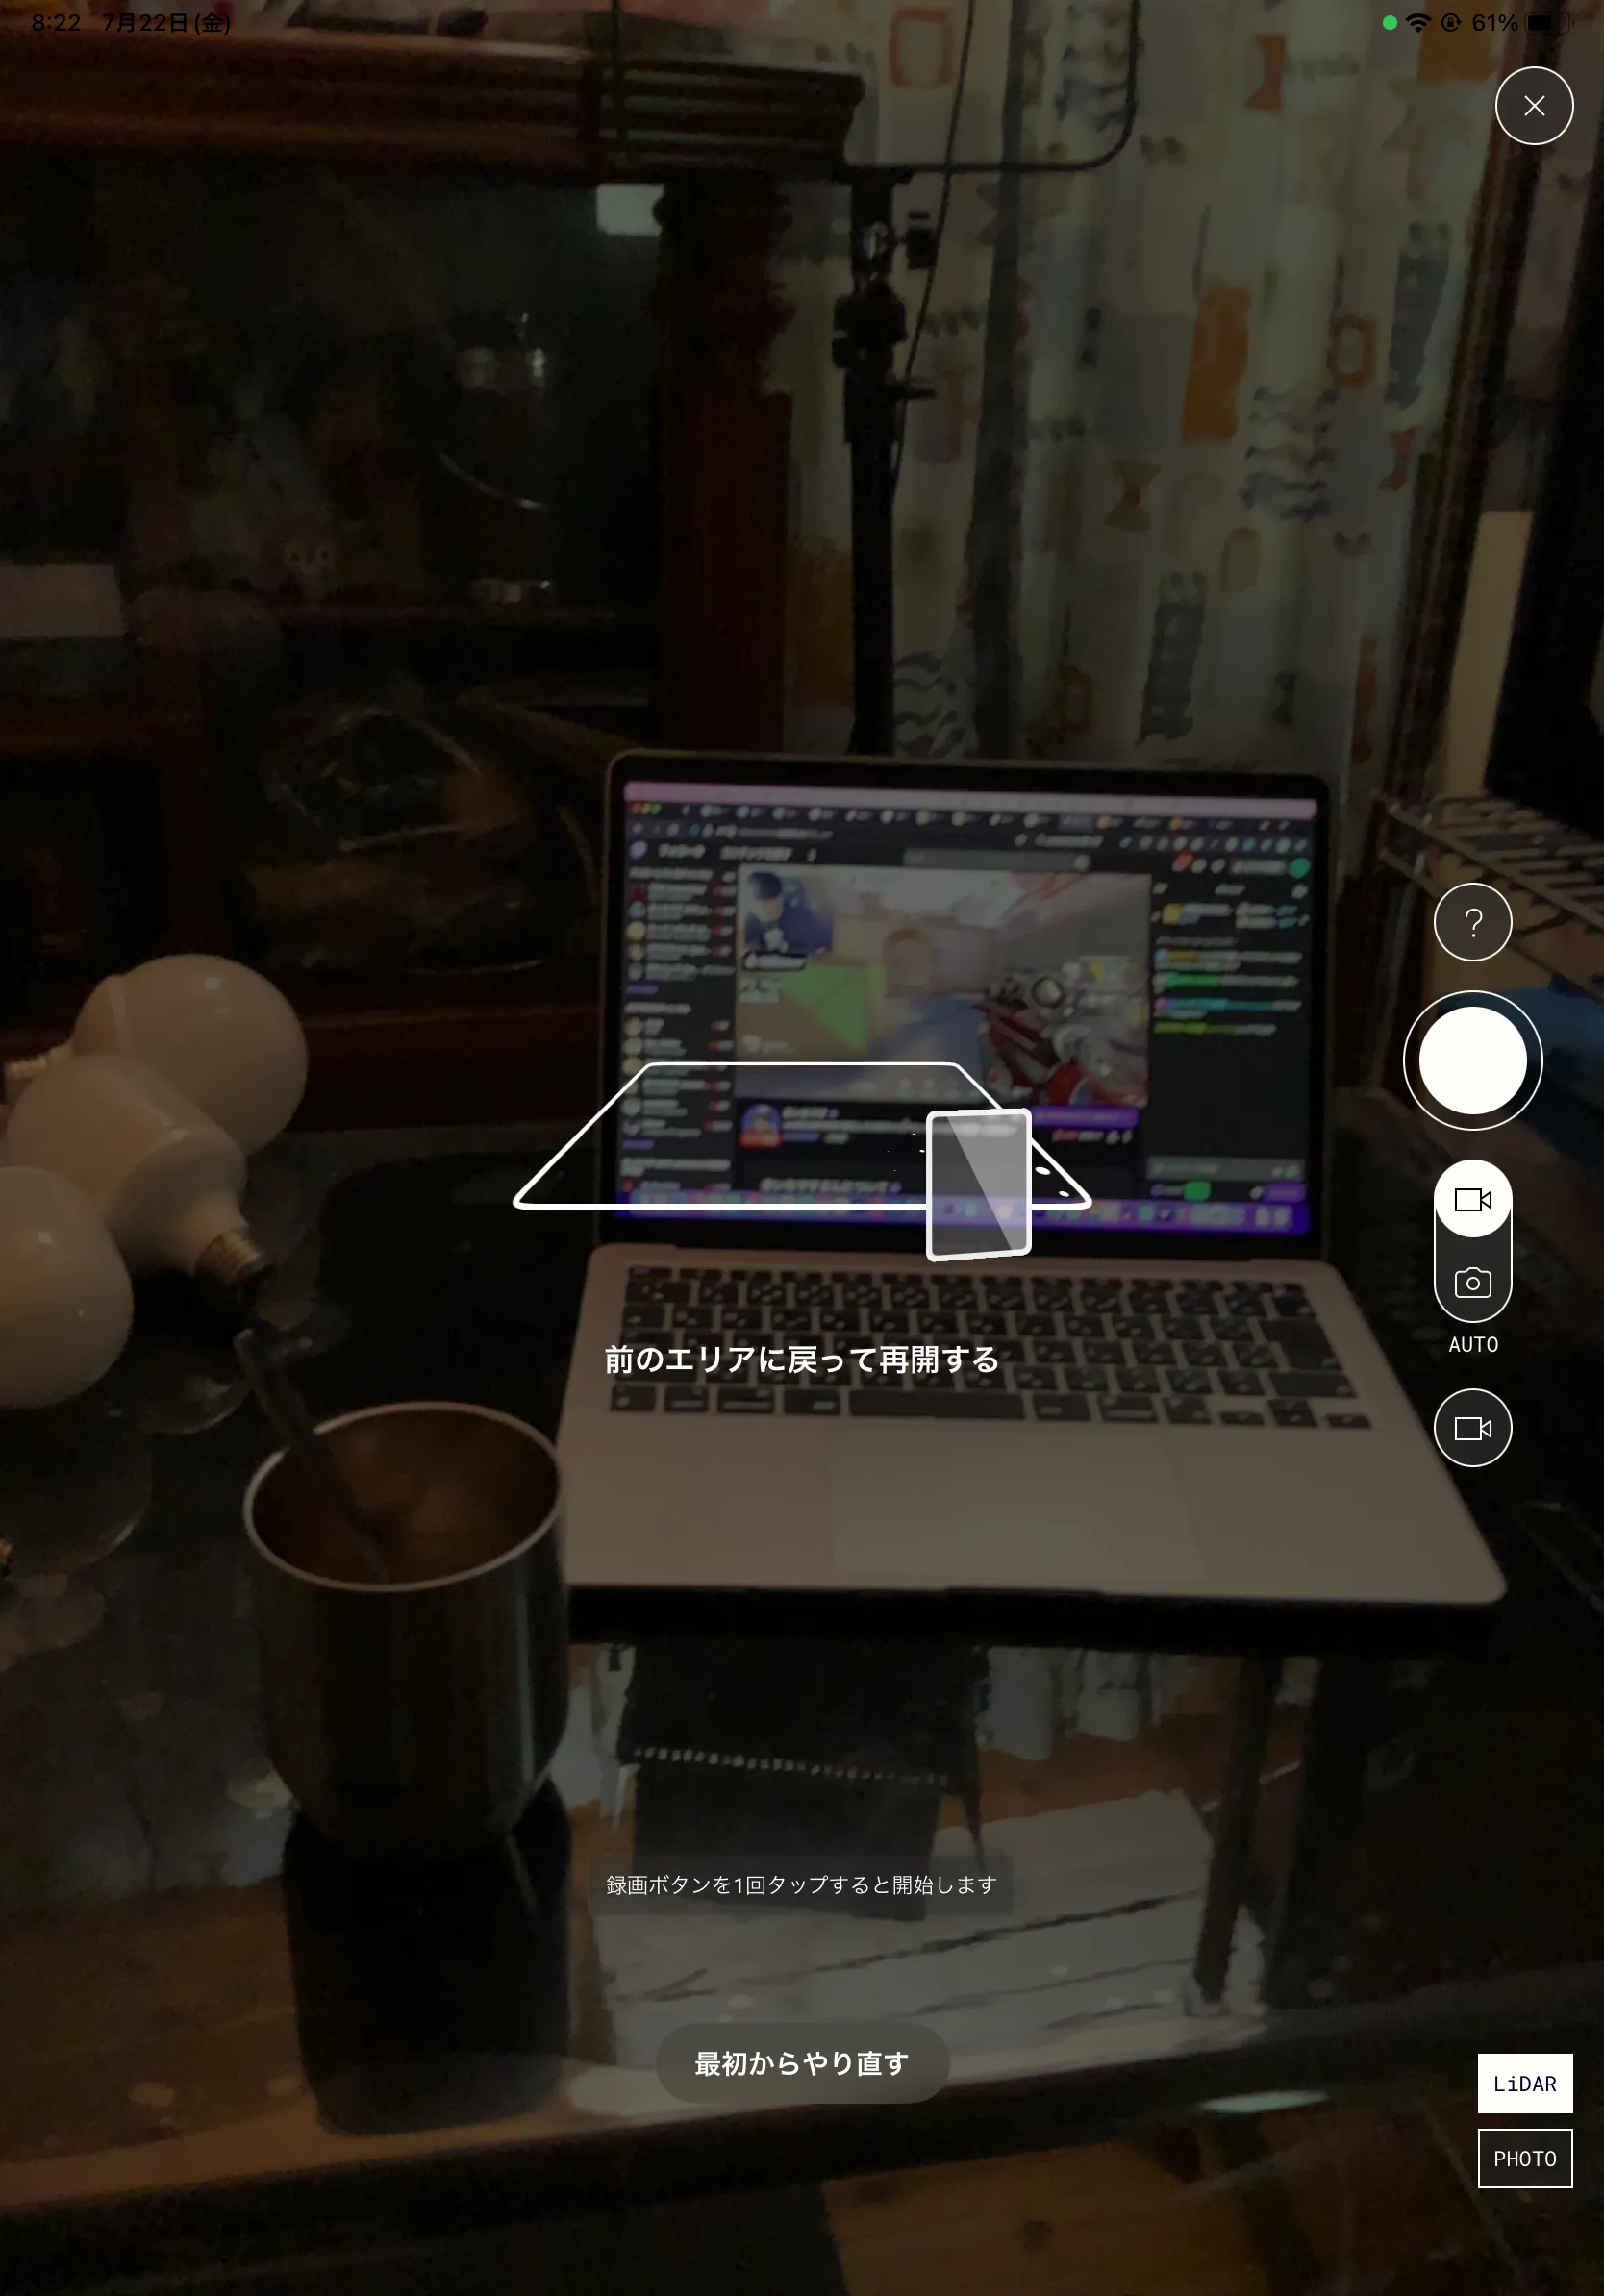 「Polycam」での3Dスキャンは360度回り込んで撮影するのがポイント